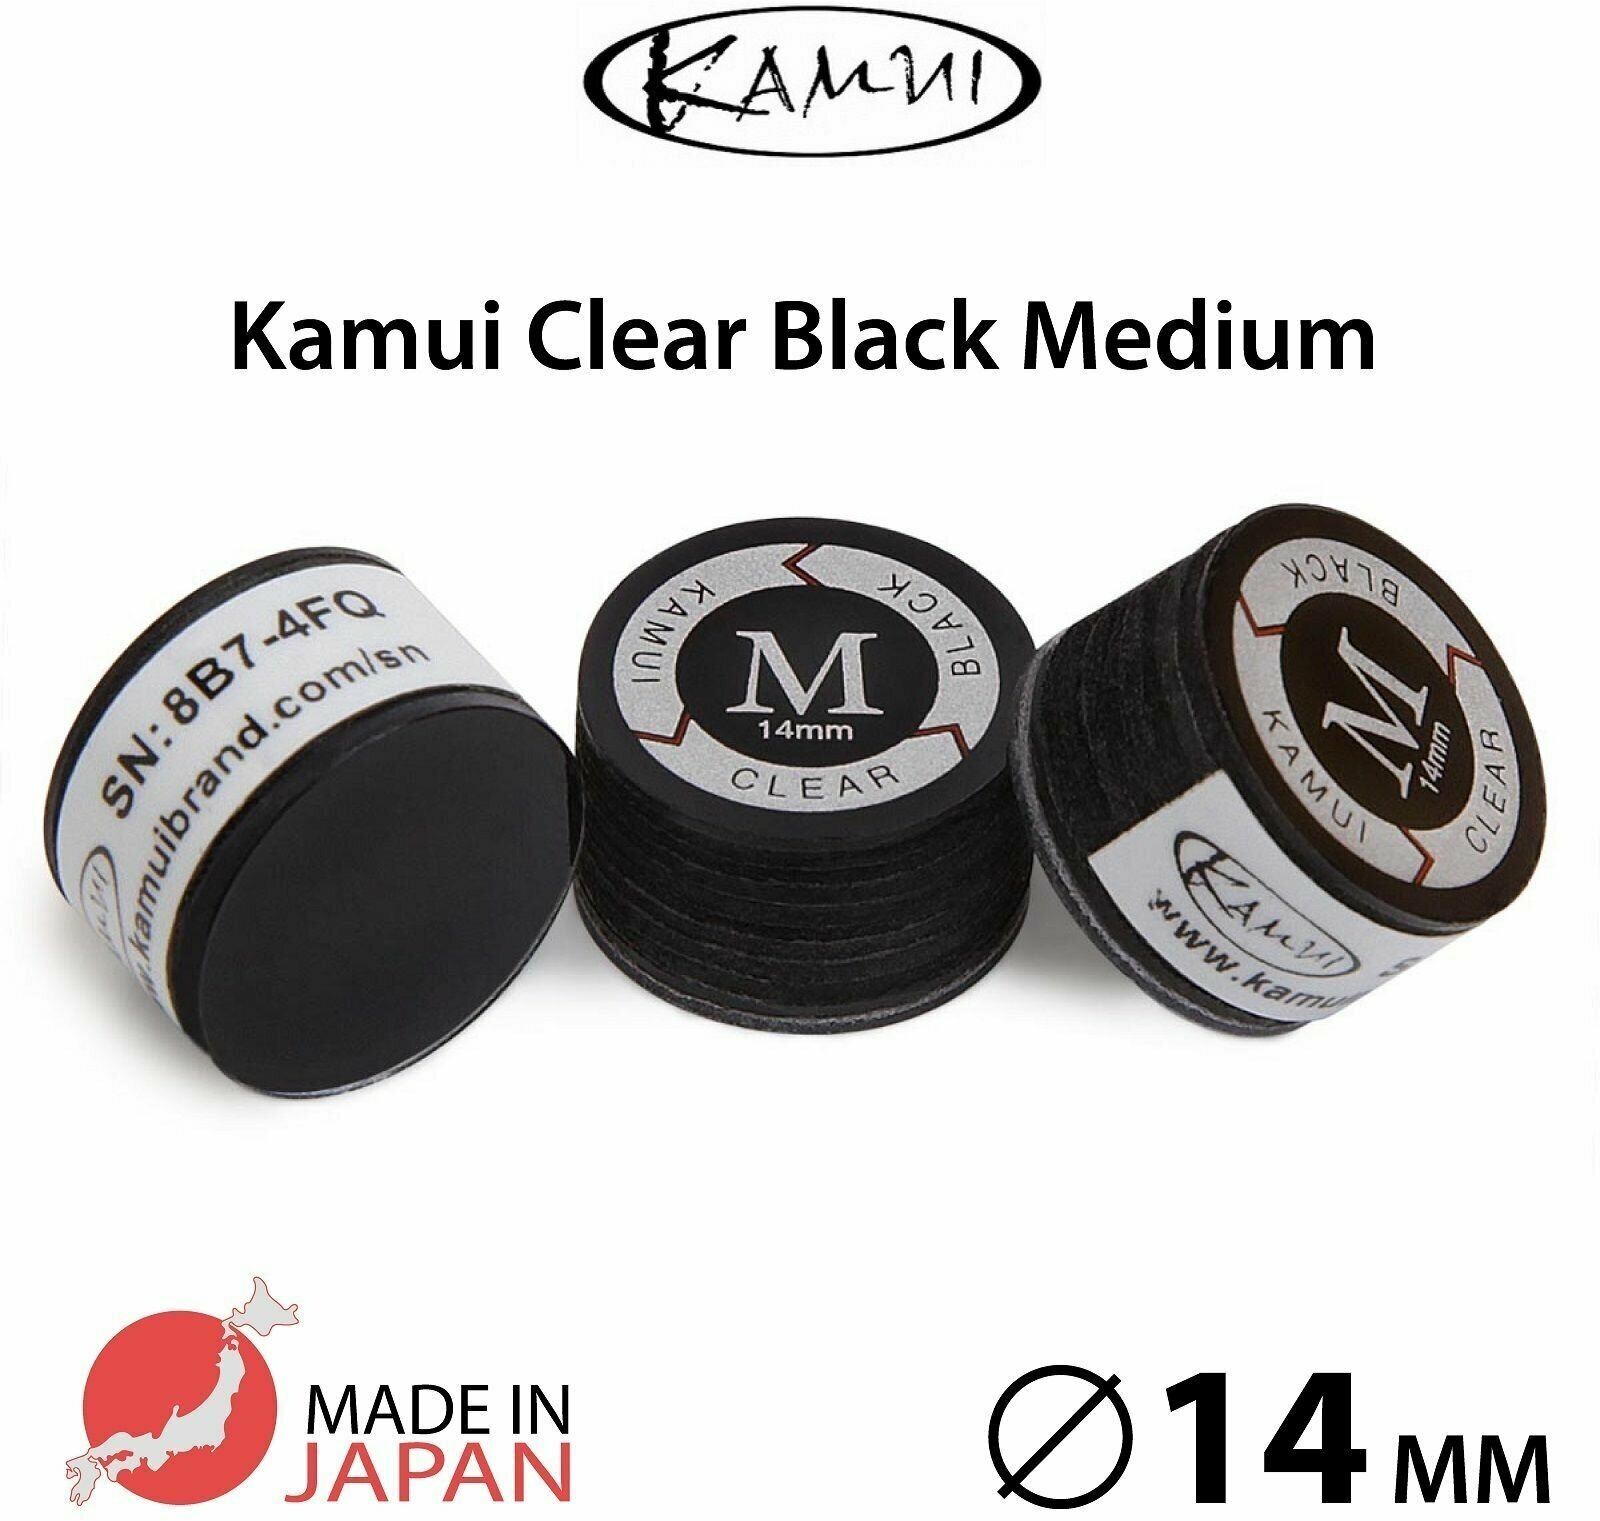 Наклейка для кия Kamui Clear Black 14 мм Medium, многослойная, 1 шт.